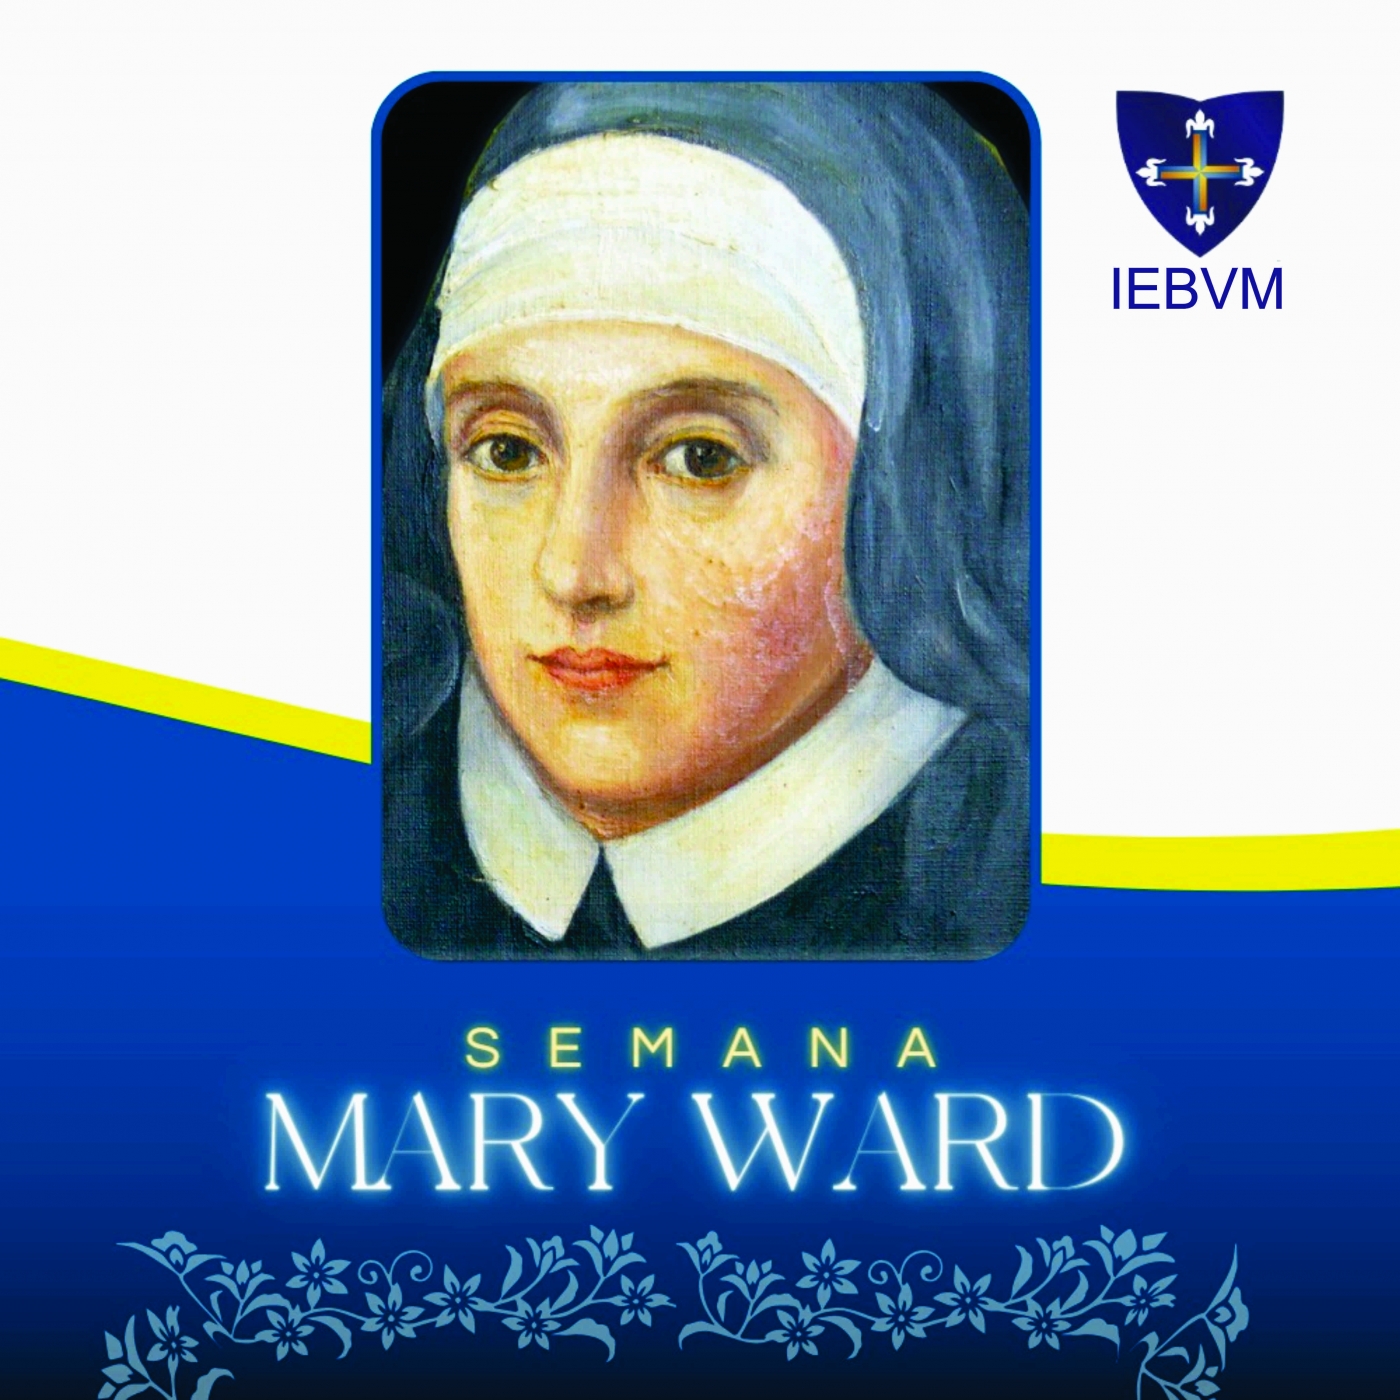 Semana Mary Ward - Resultados